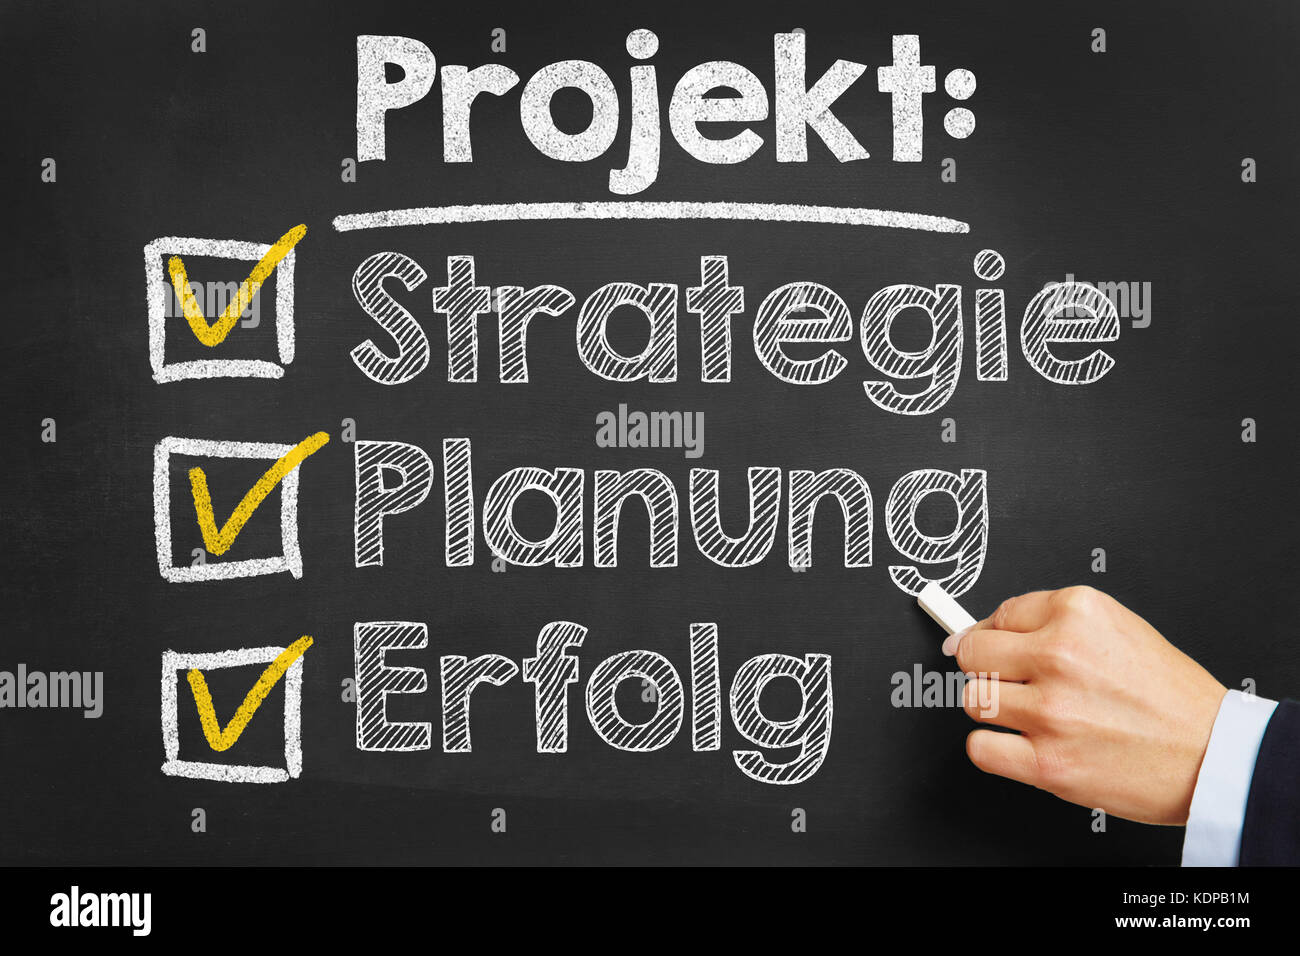 Elenco di controllo con projekt planung strategie e erfolg (progetto, strategia di pianificazione e di successo) per business strategia di pianificazione del progetto Foto Stock